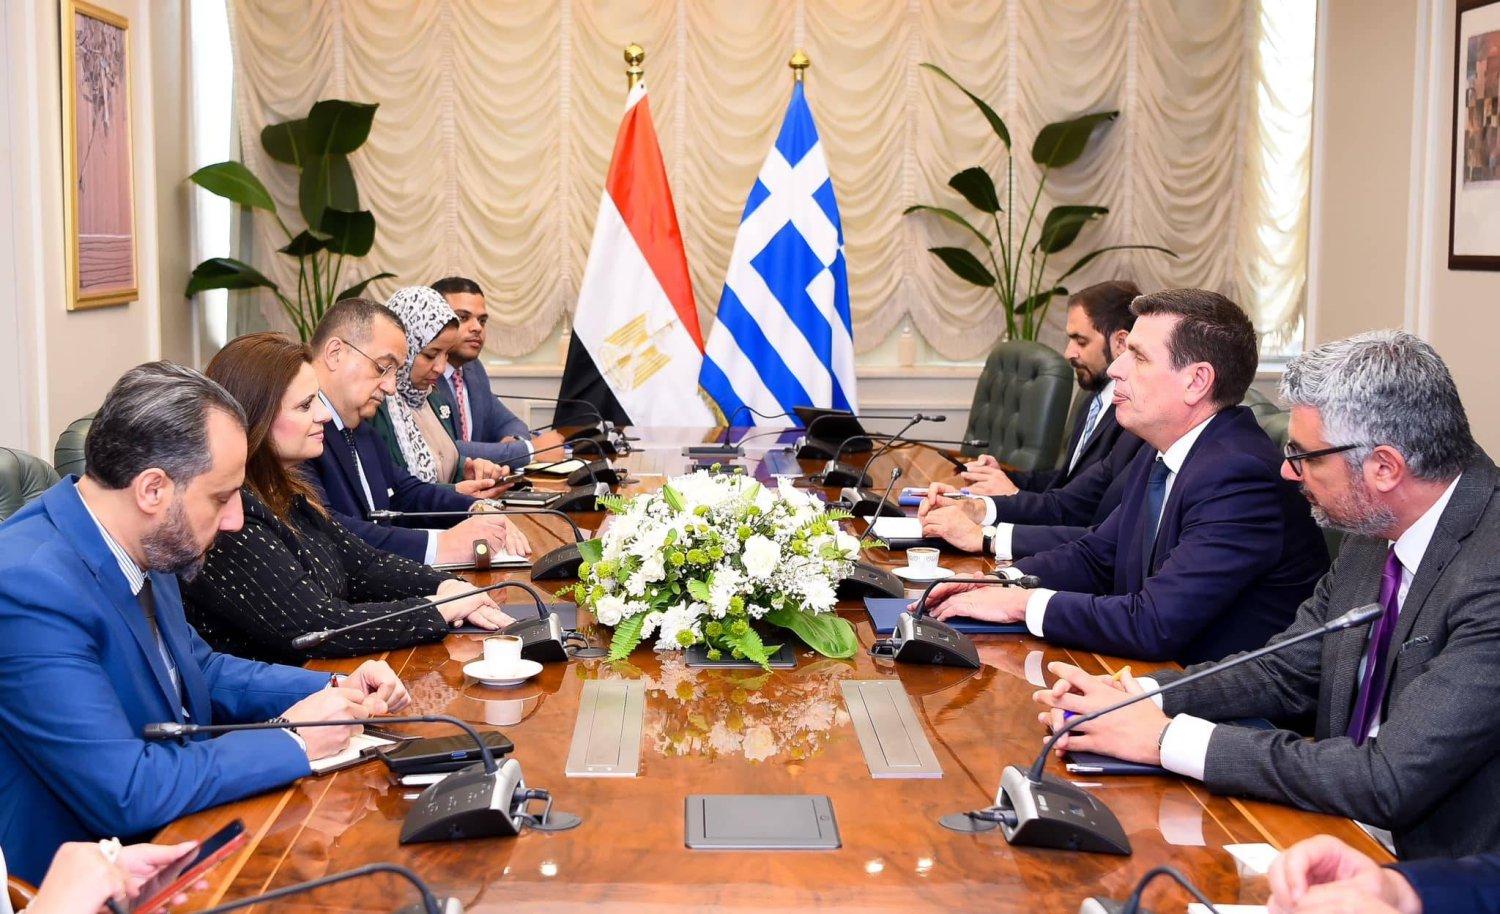 وزيرة الهجرة المصرية خلال لقائها مع وزير الهجرة اليوناني في القاهرة (وزارة الهجرة المصرية)